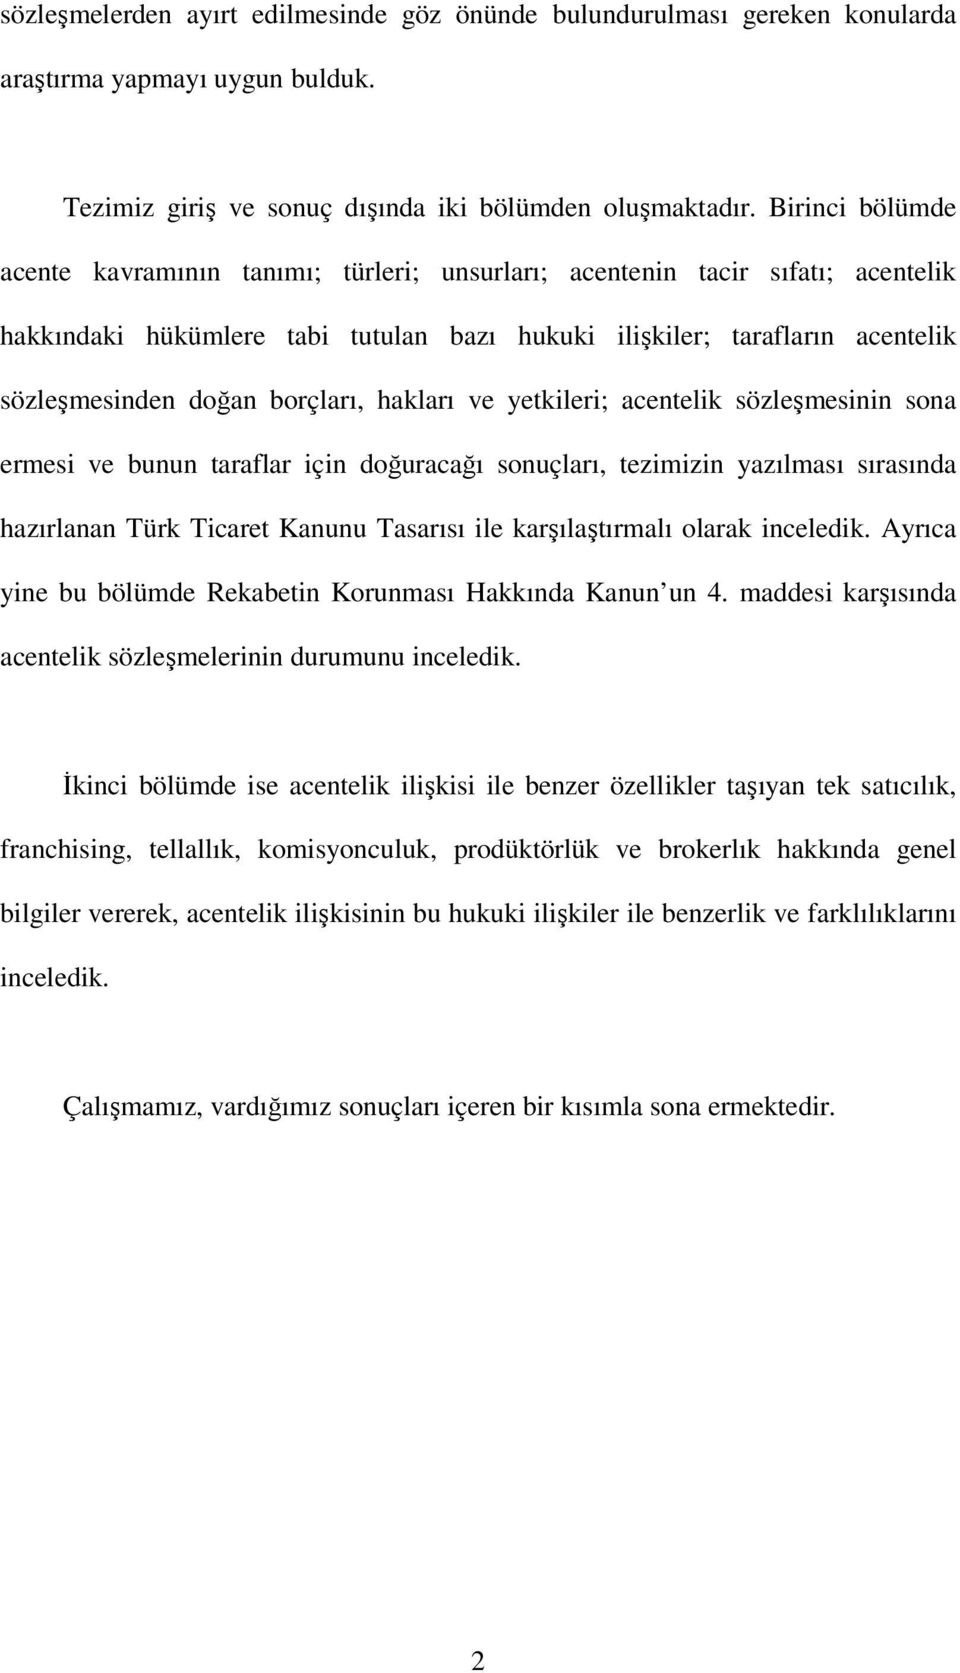 borçları, hakları ve yetkileri; acentelik sözleşmesinin sona ermesi ve bunun taraflar için doğuracağı sonuçları, tezimizin yazılması sırasında hazırlanan Türk Ticaret Kanunu Tasarısı ile